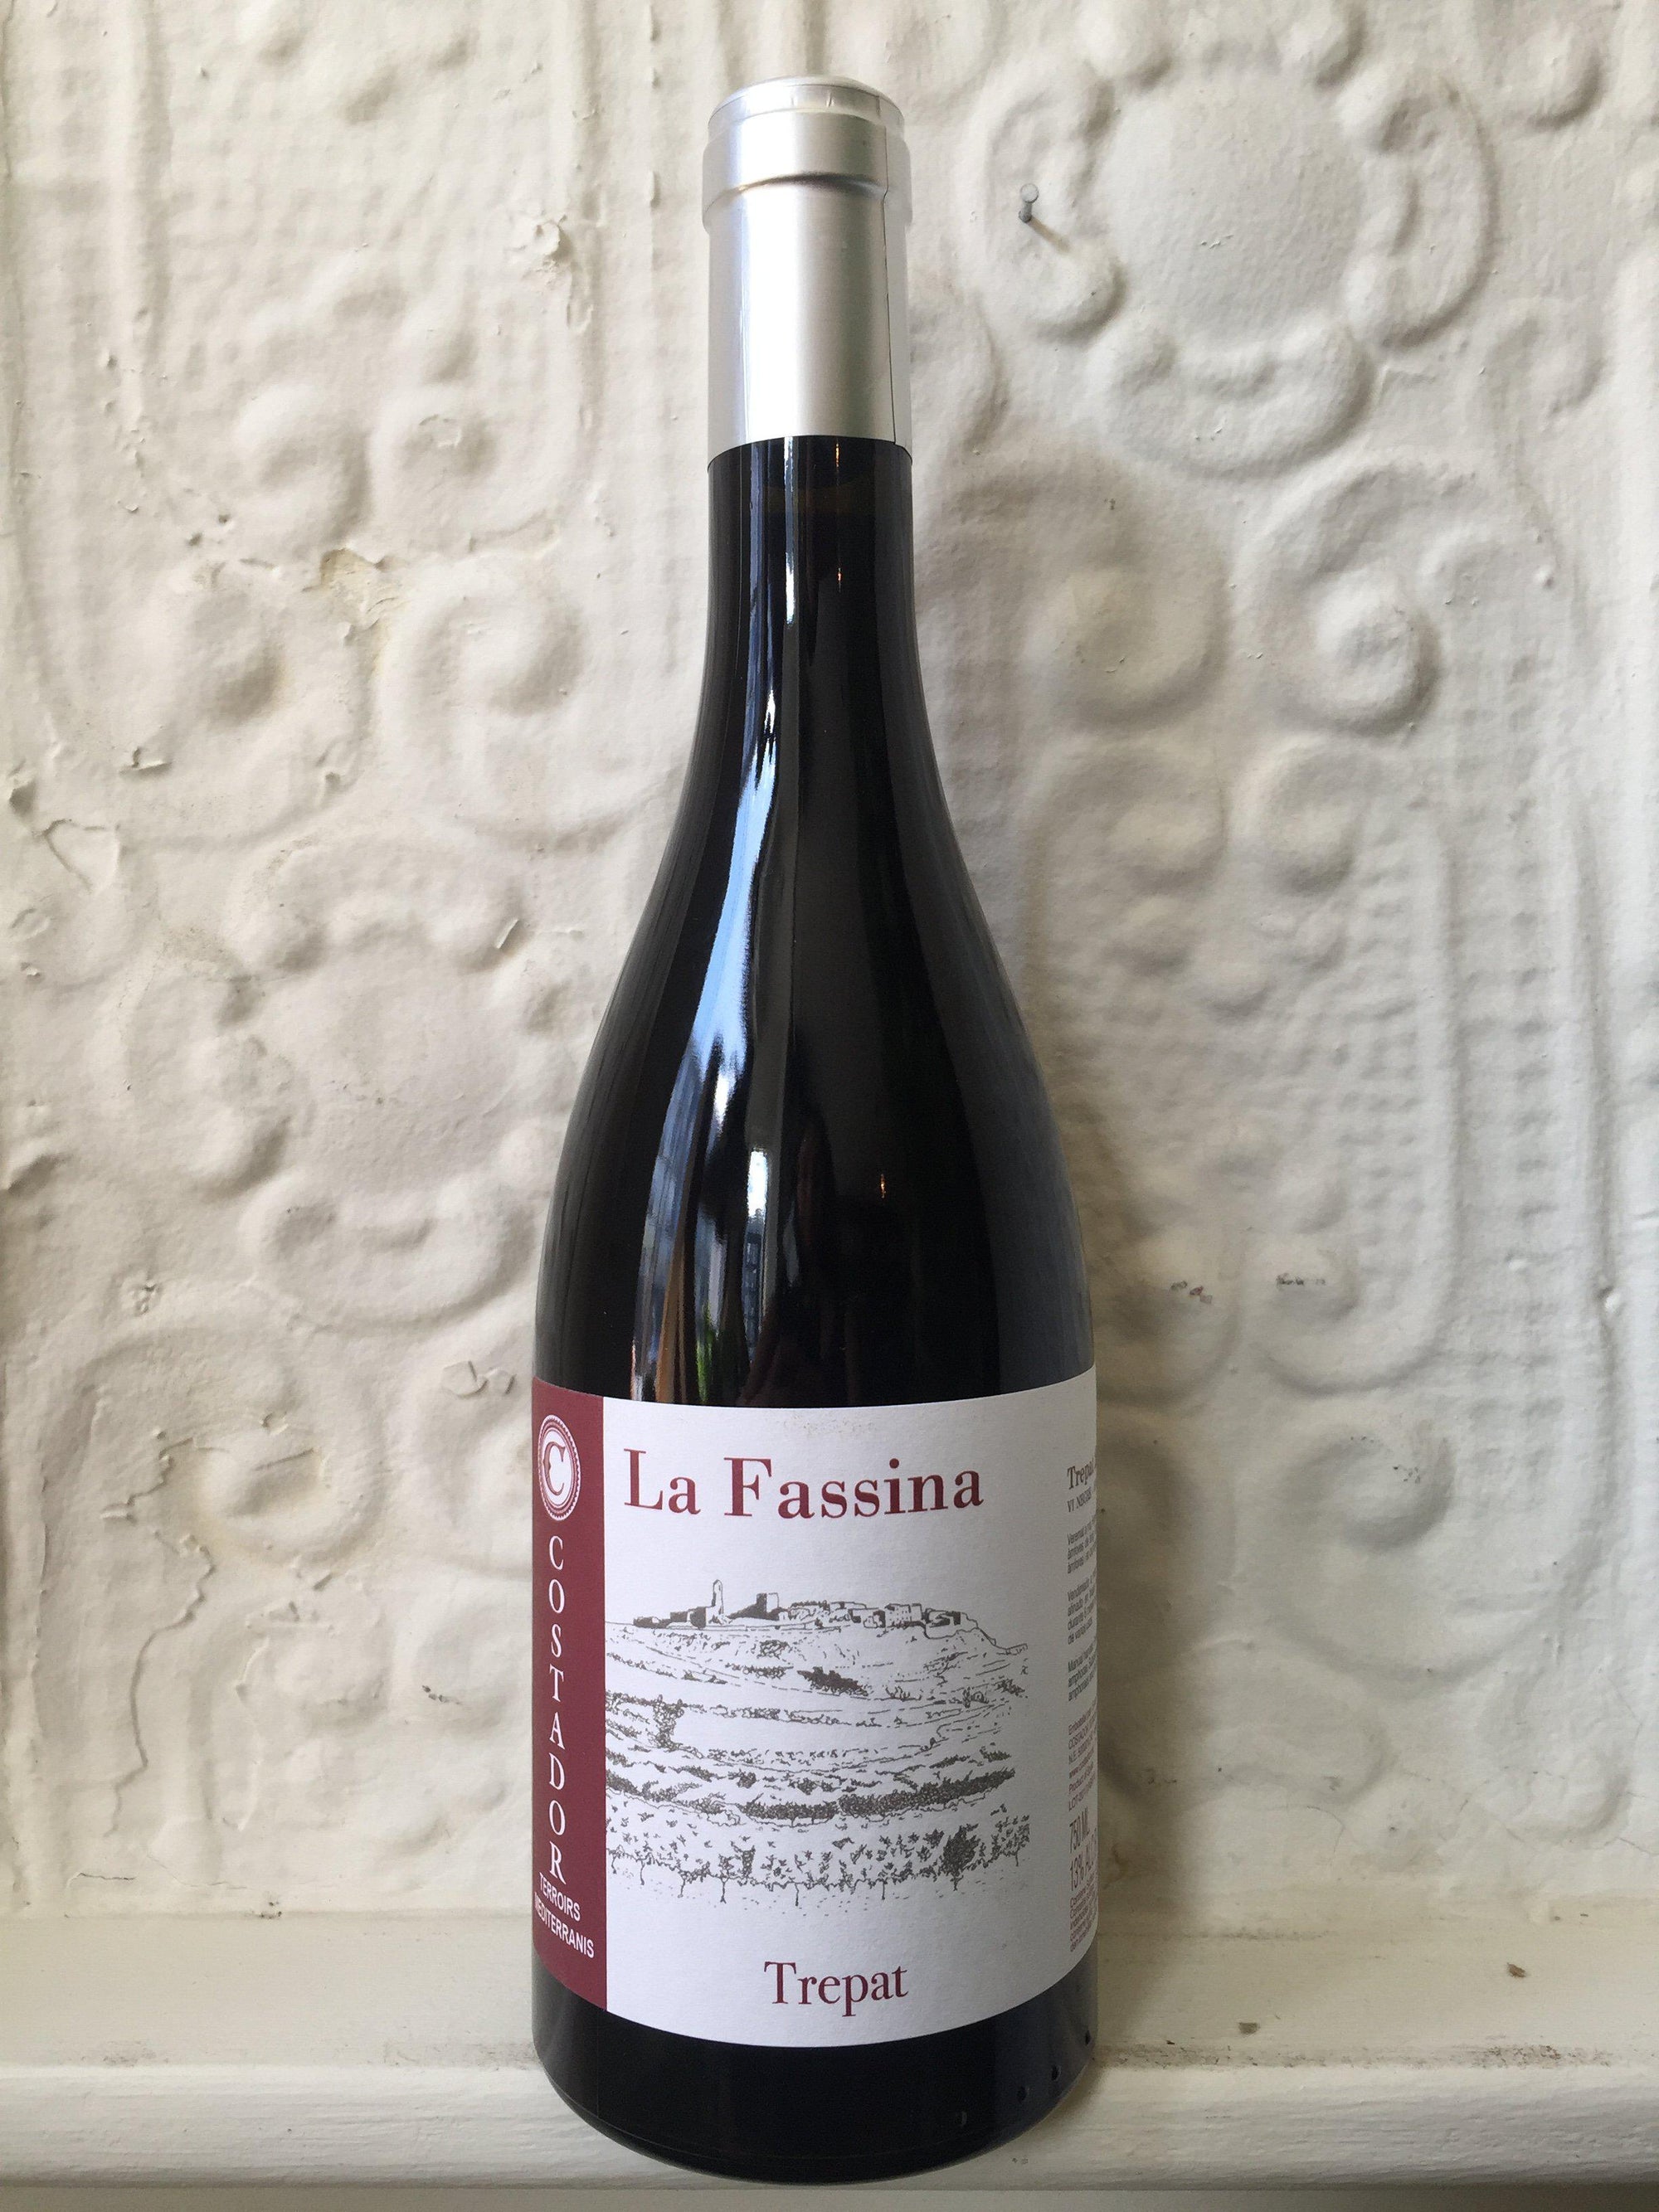 Trepat "La Fassina", Costador 2017 (Catalonia, Spain)-Wine-Bibber & Bell